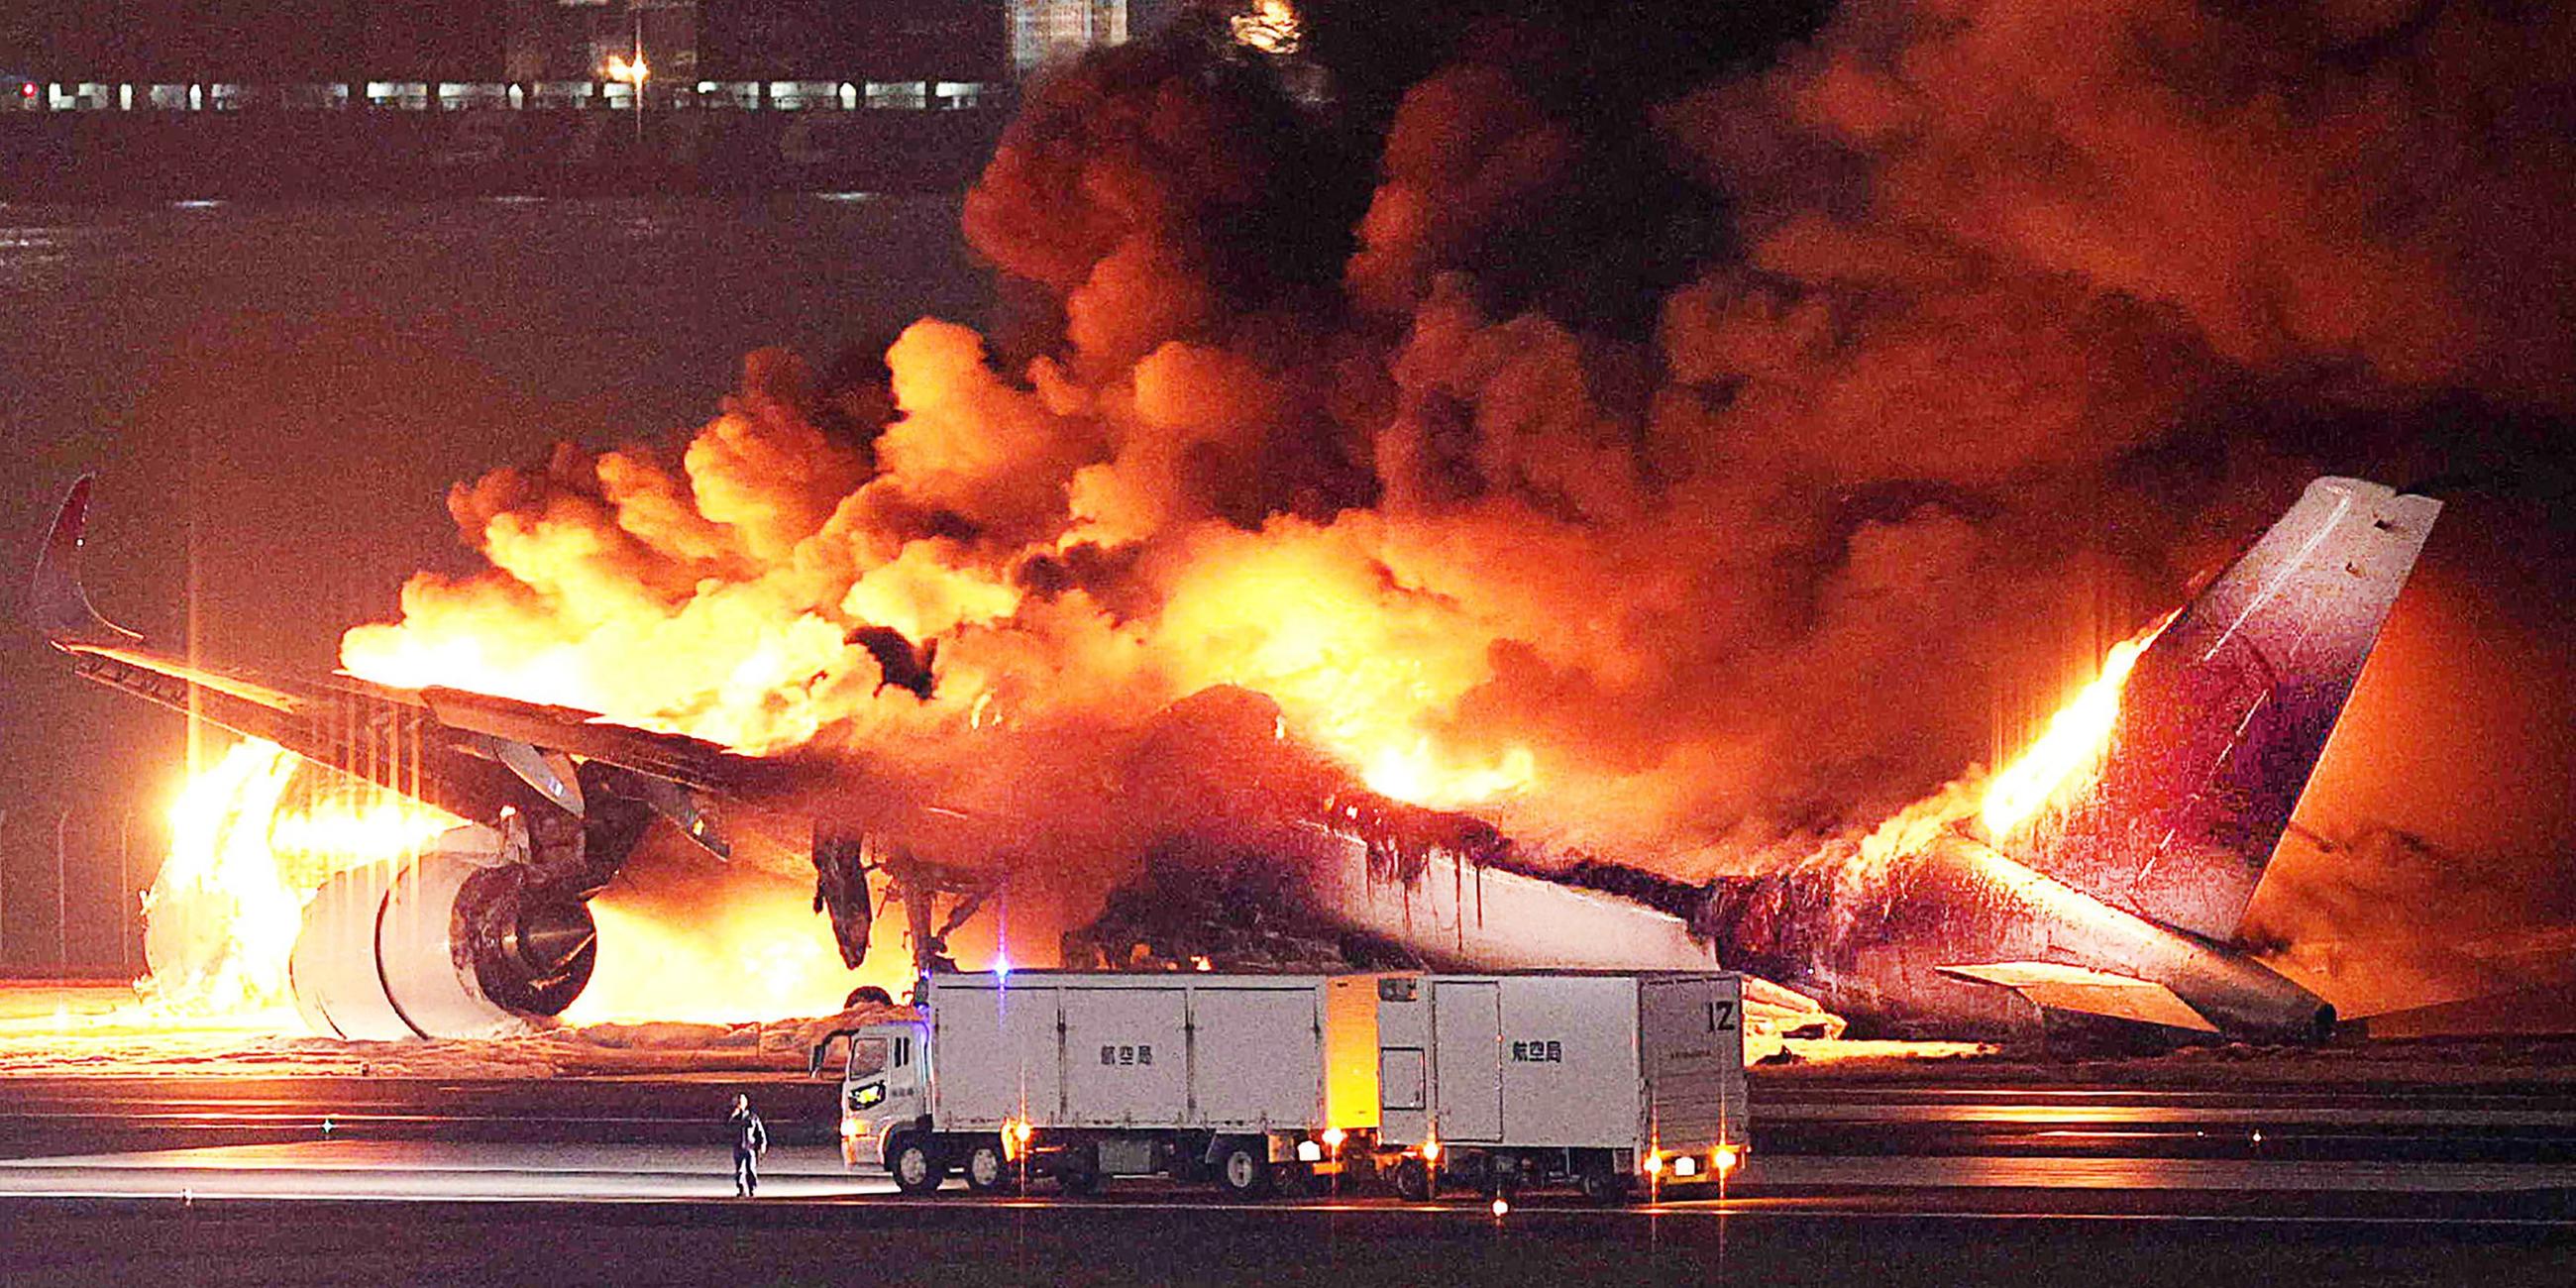 Ein Flugzeug von Japan Airlines in Brand auf dem Tokioter Flughafen Haneda.